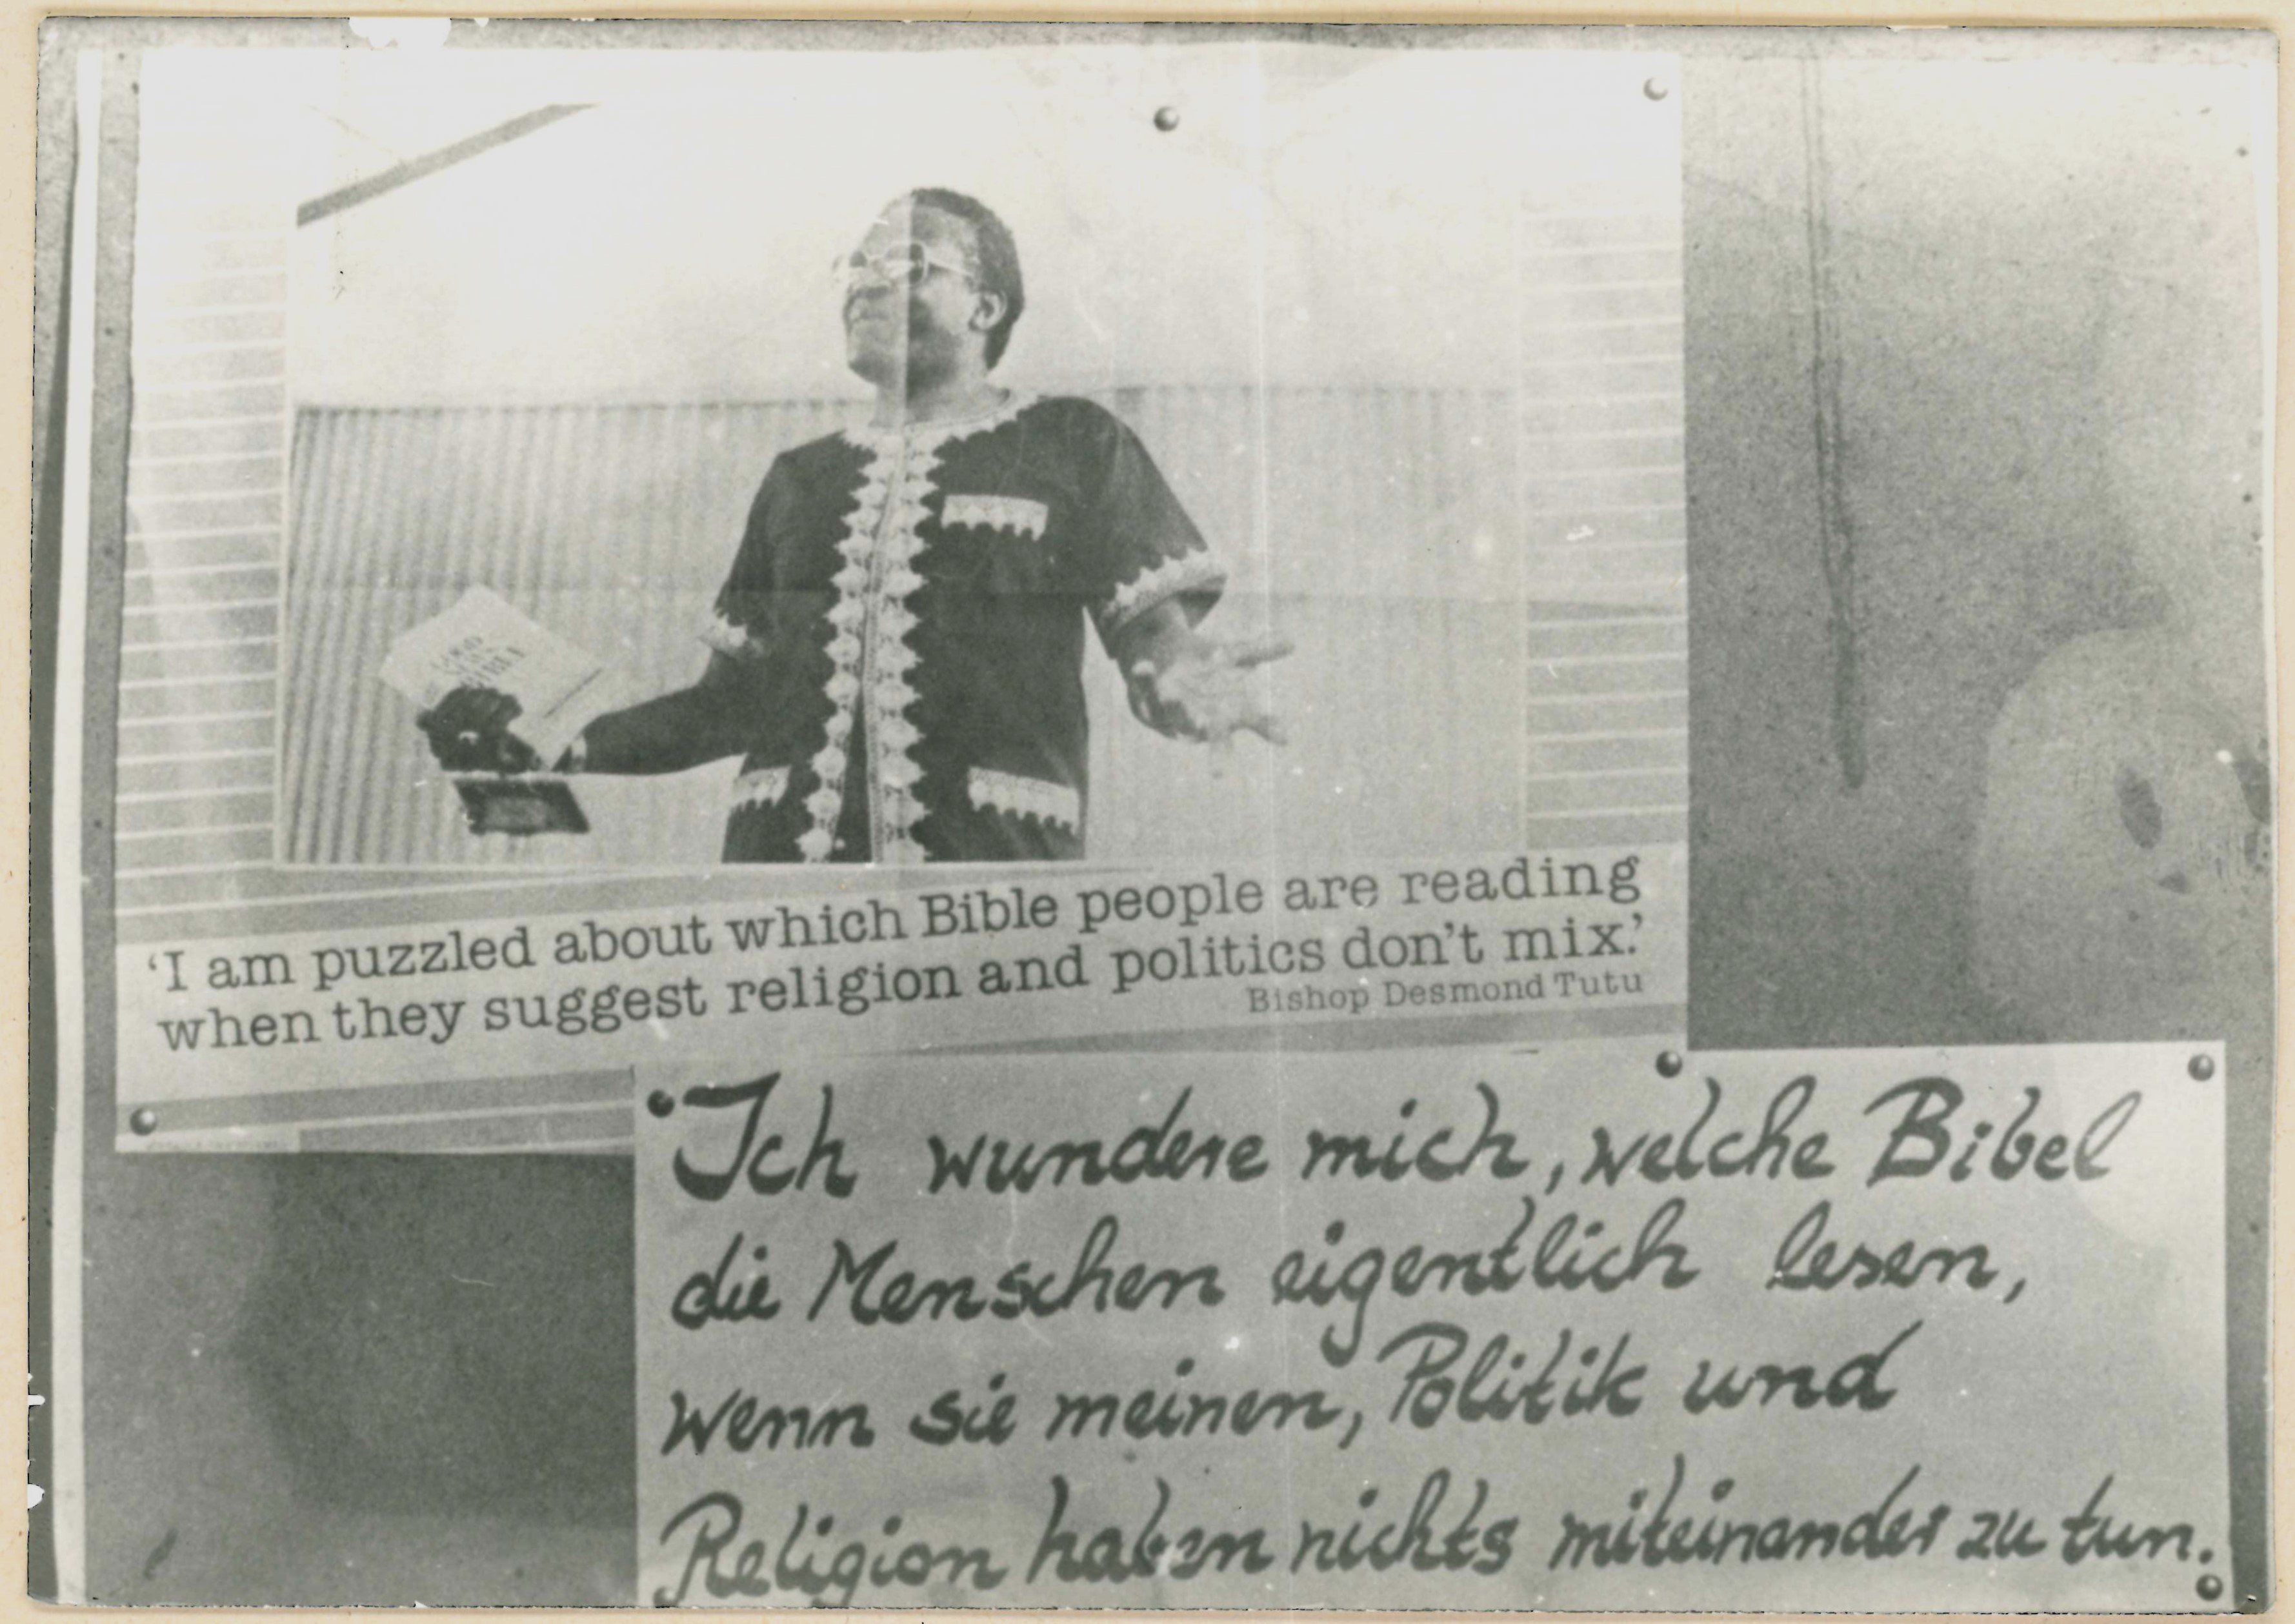 Olof-Palme-Marsch 1987: Plakat mit Desmond Tutu-Zitat (DDR Geschichtsmuseum im Dokumentationszentrum Perleberg CC BY-SA)